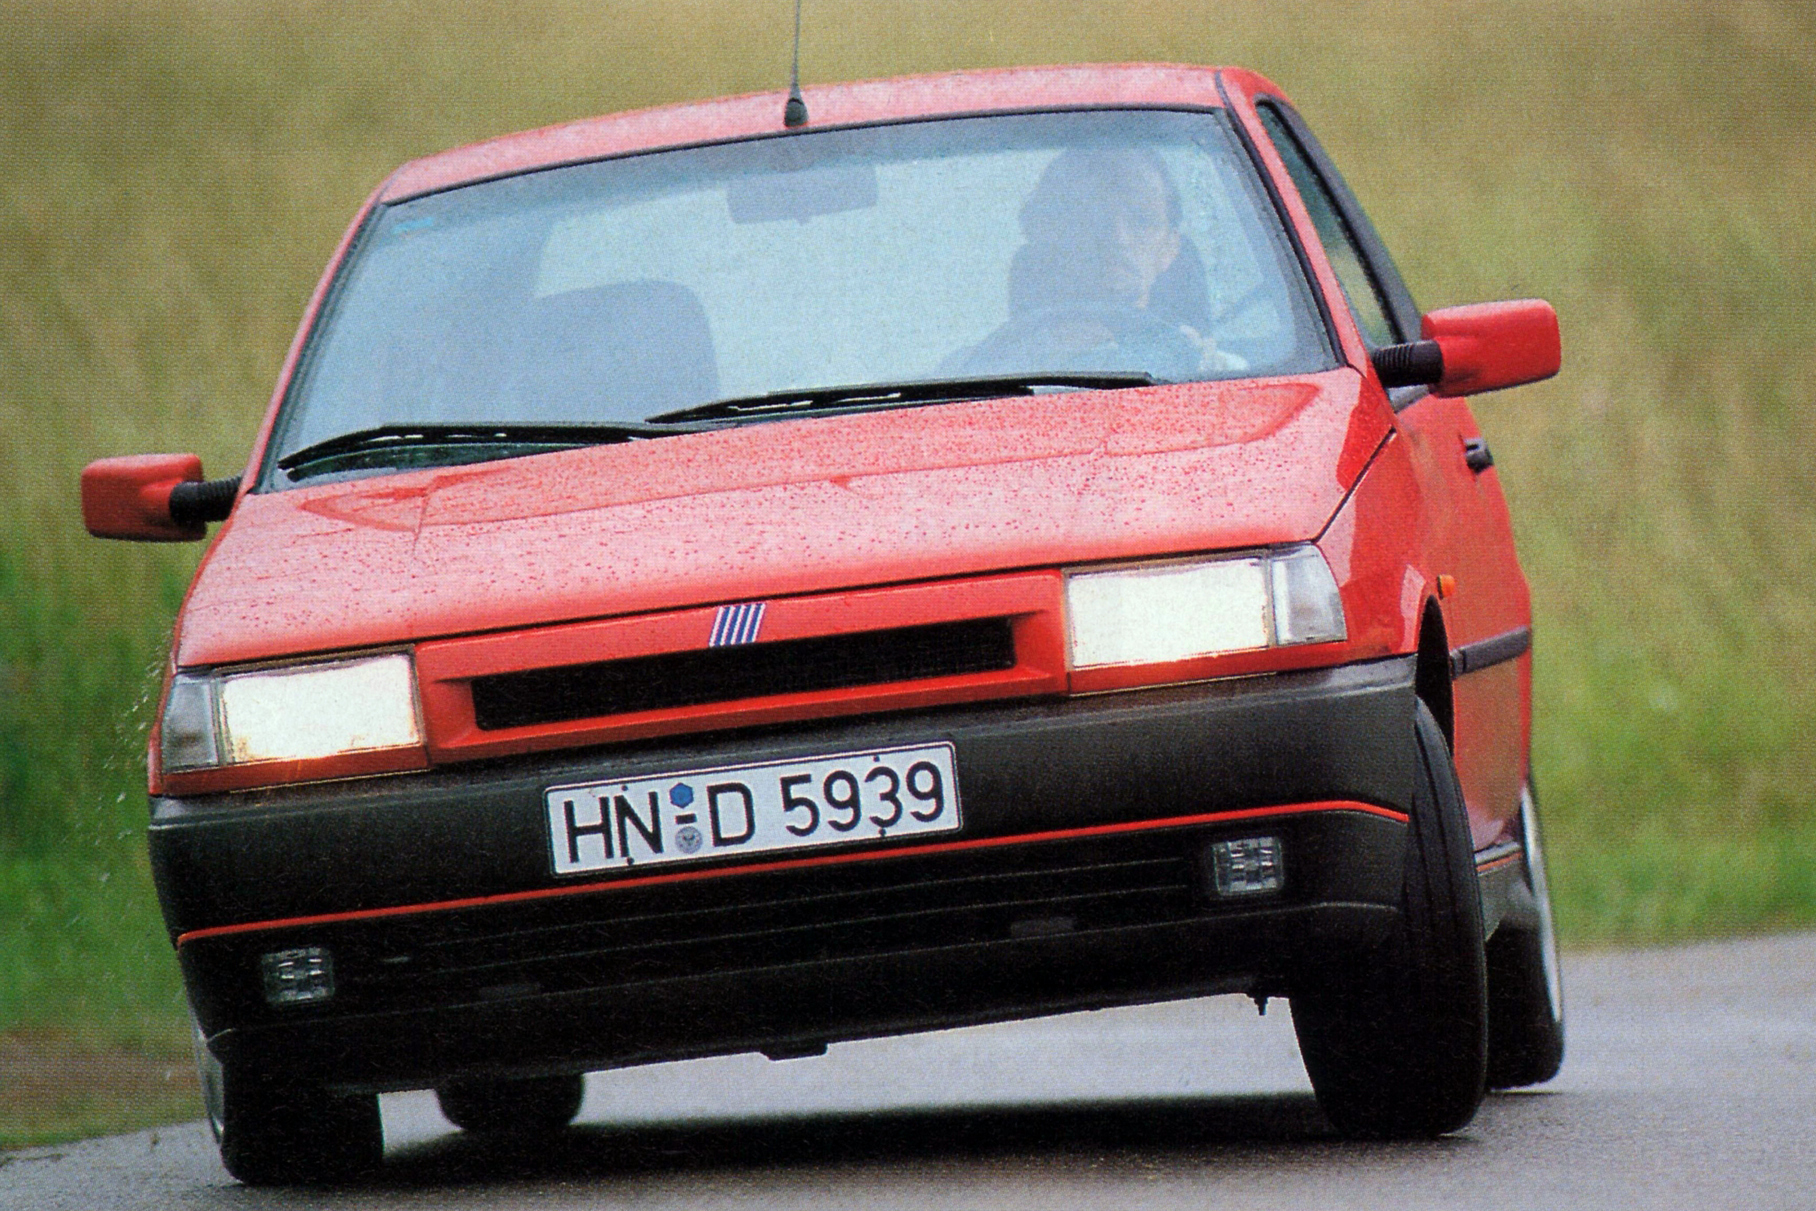 По динамике Fiat не был рекордсменом среди соперников — машина была тяжеловата, но «сотню» за 8,4 секунды набирала. Двигатель хвалили за отменную тягу на средних оборотах и классный звук, когда он раскручивался до 6000 оборотов в минуту. Более того: многие журналисты признавали его лучшим хот-хэтчем в классе на момент выхода! Итальянская зажигалка практически во всём превосходила и Ford Escort RS2000, и Volkswagen Golf GTI. Tipo Sedicivalvole хвалили за сочетание комфорта и живого отзывчивого шасси, сохранявшего уверенную хватку даже в самых экстремальных условиях. Fiat производил впечатление не только динамичного и интересного, но и «взрослого», зрелого автомобиля. И тем не менее: сегодня встретить его — удача даже на слётах владельцев итальянских машин, а помнят этот хот-хэтч только самые-самые энтузиасты.